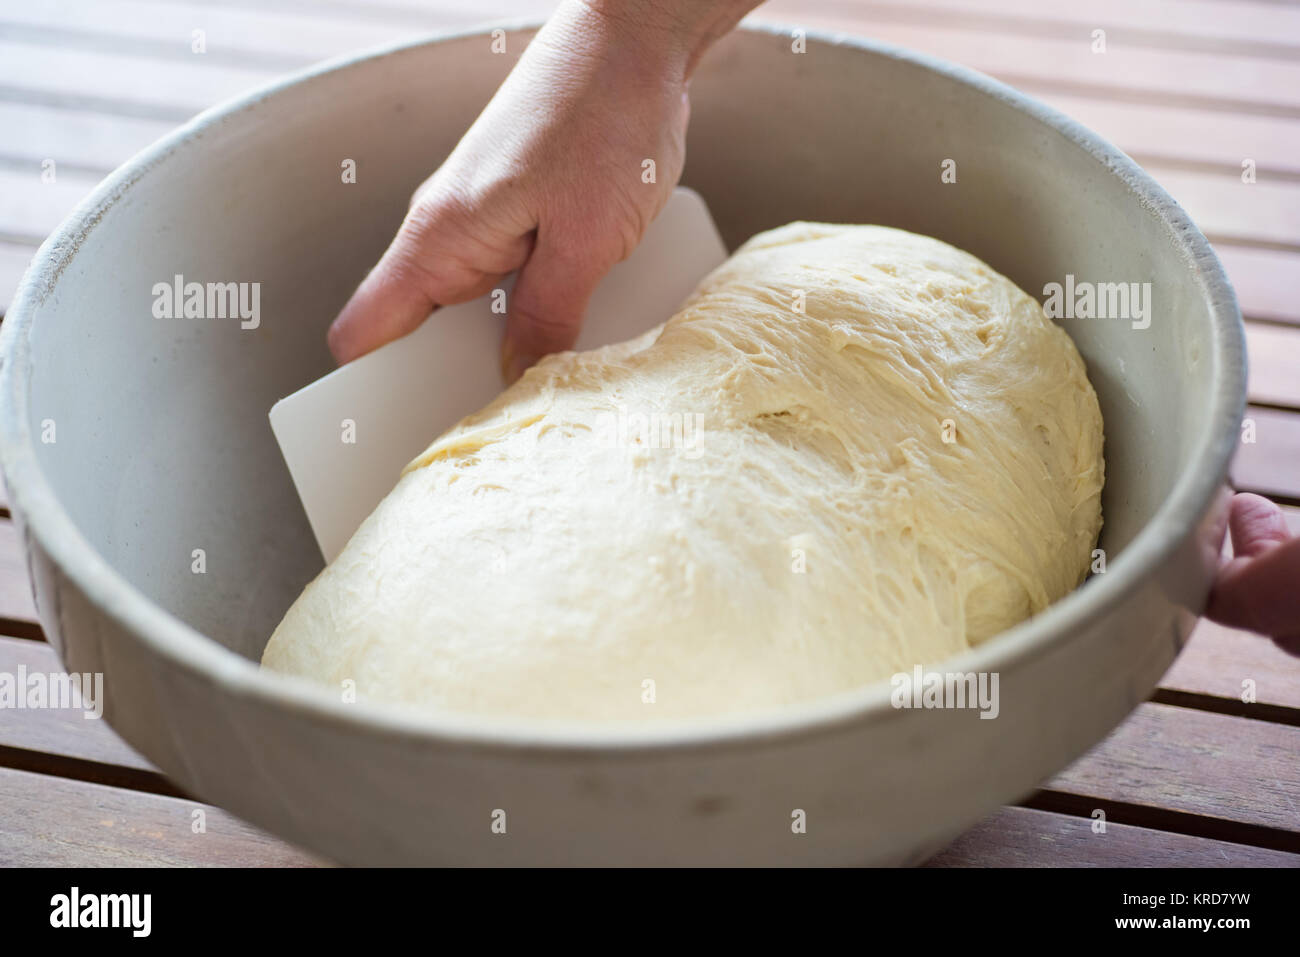 https://c8.alamy.com/comp/KRD7YW/bread-making-dough-in-a-bowl-KRD7YW.jpg